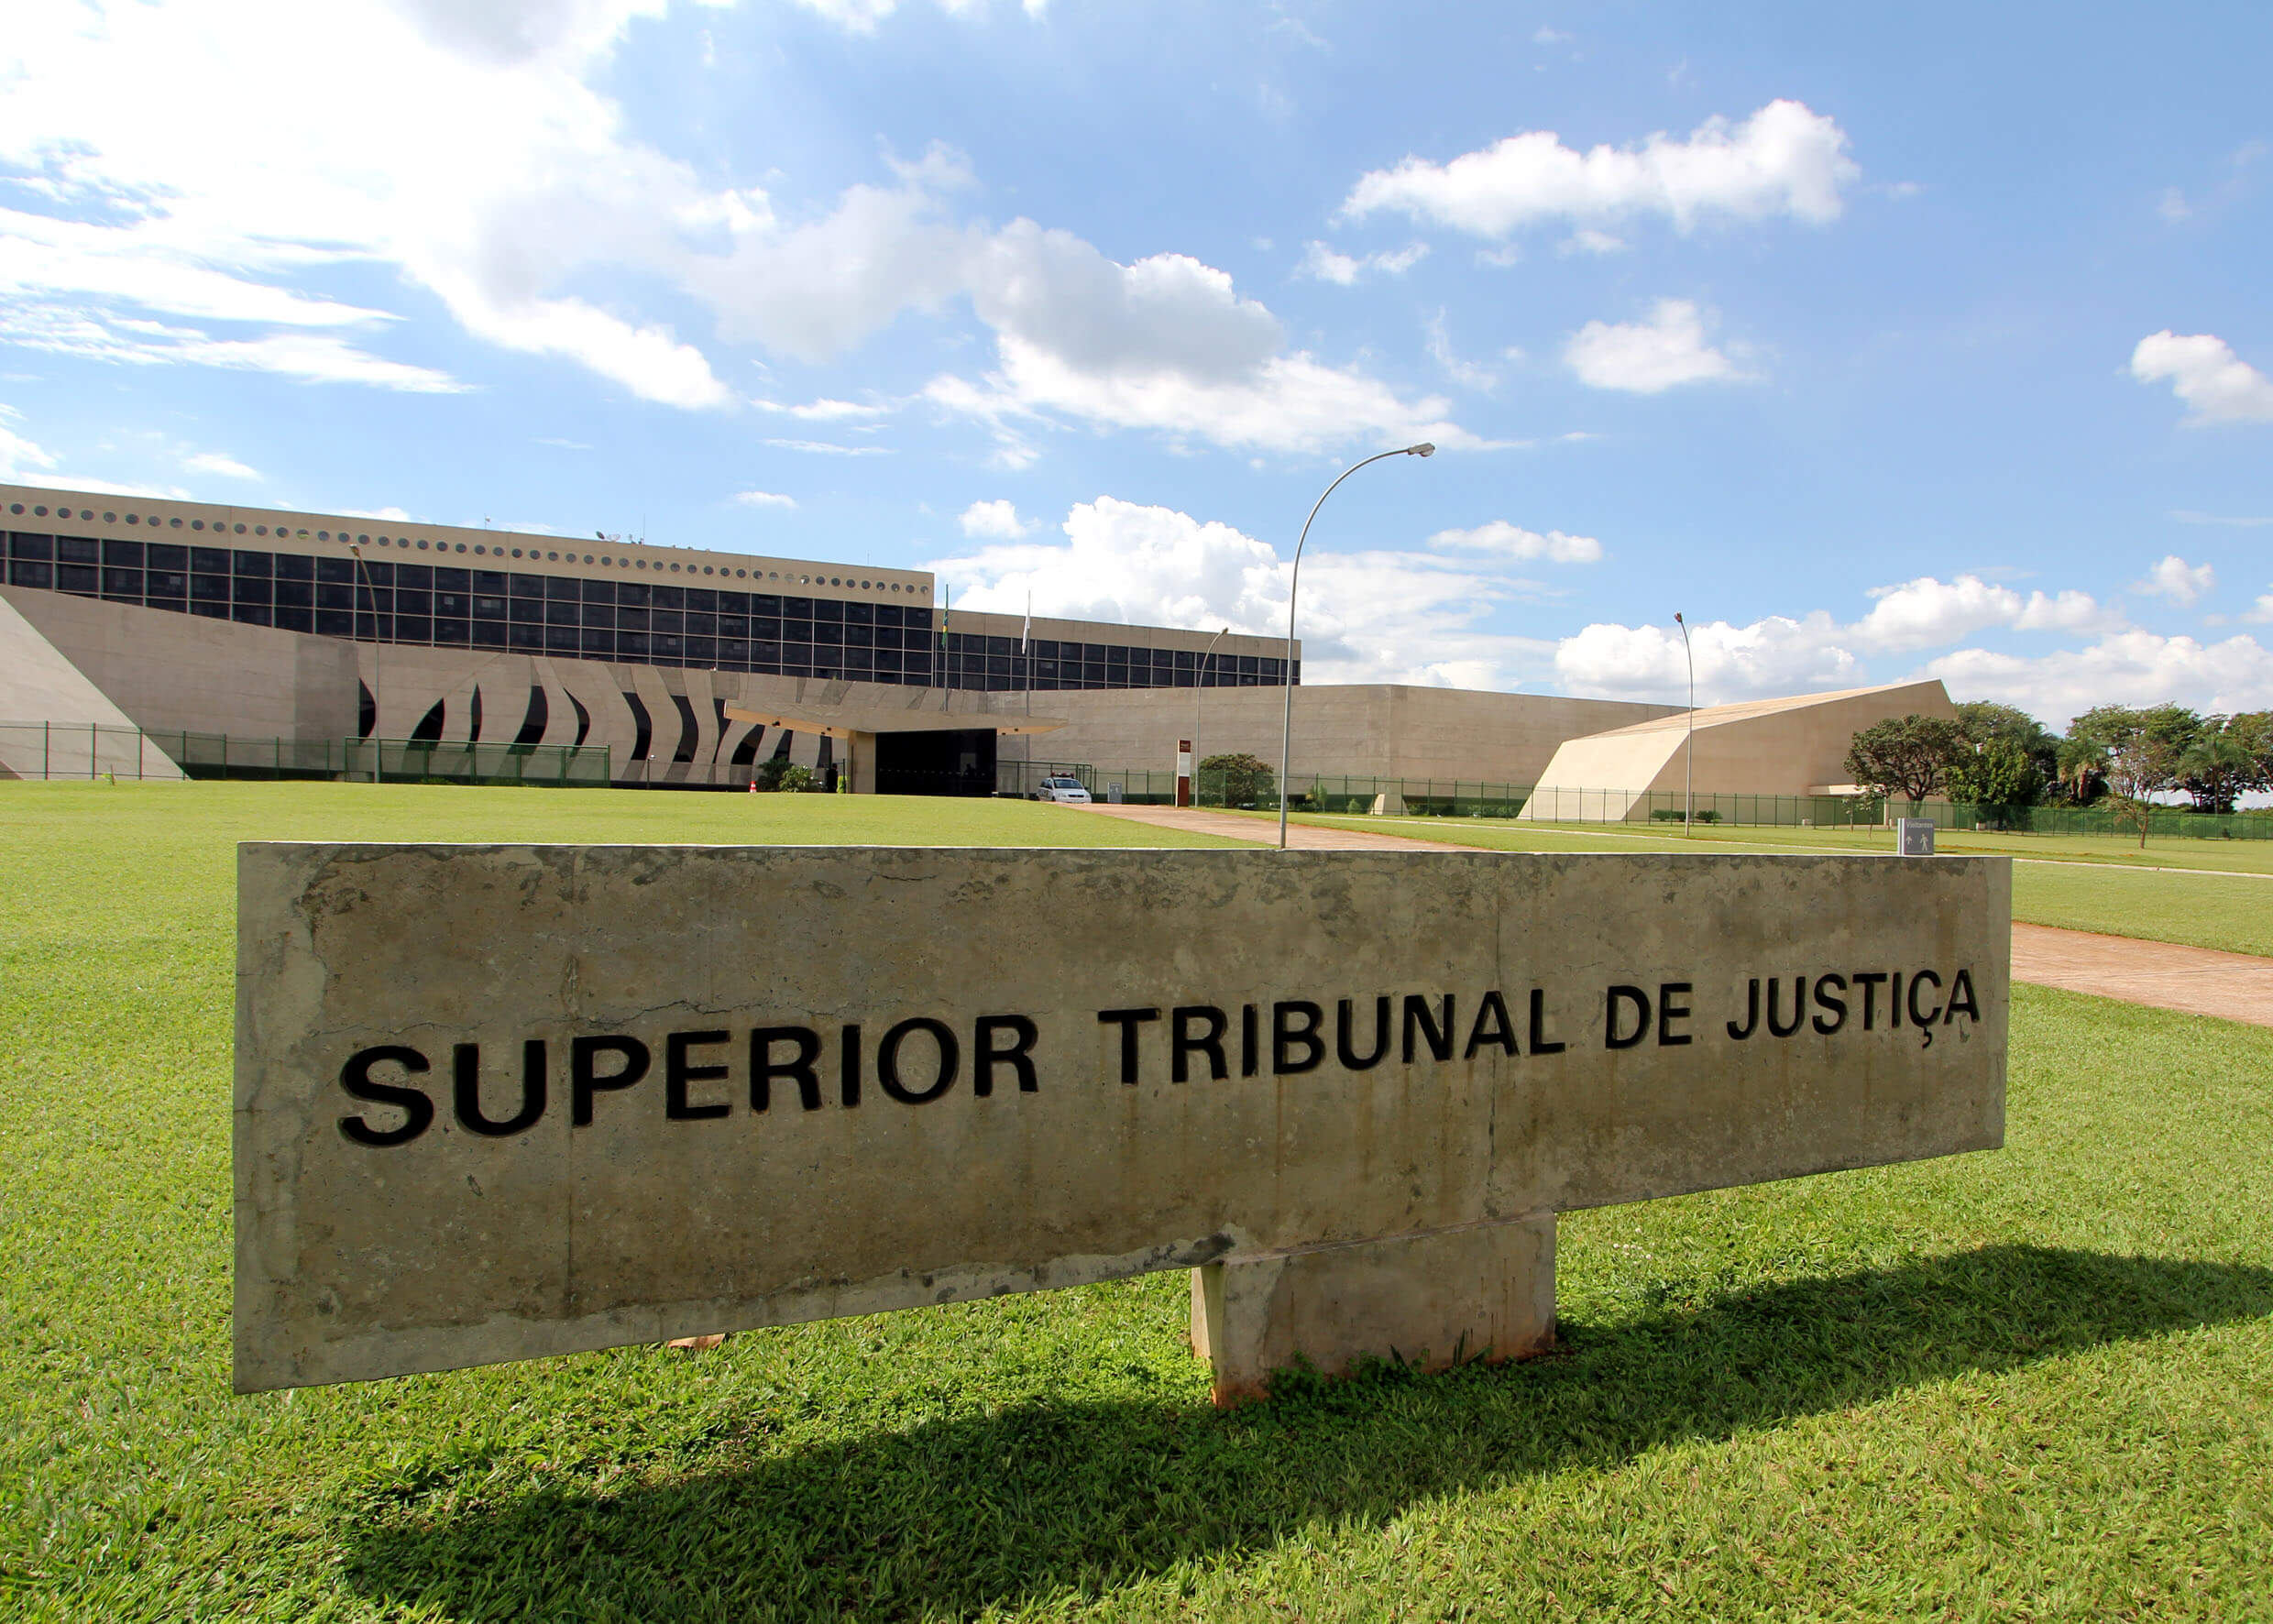 Concurso do STJ (Superior Tribunal de Justiça) – descubra como se inscrever no site